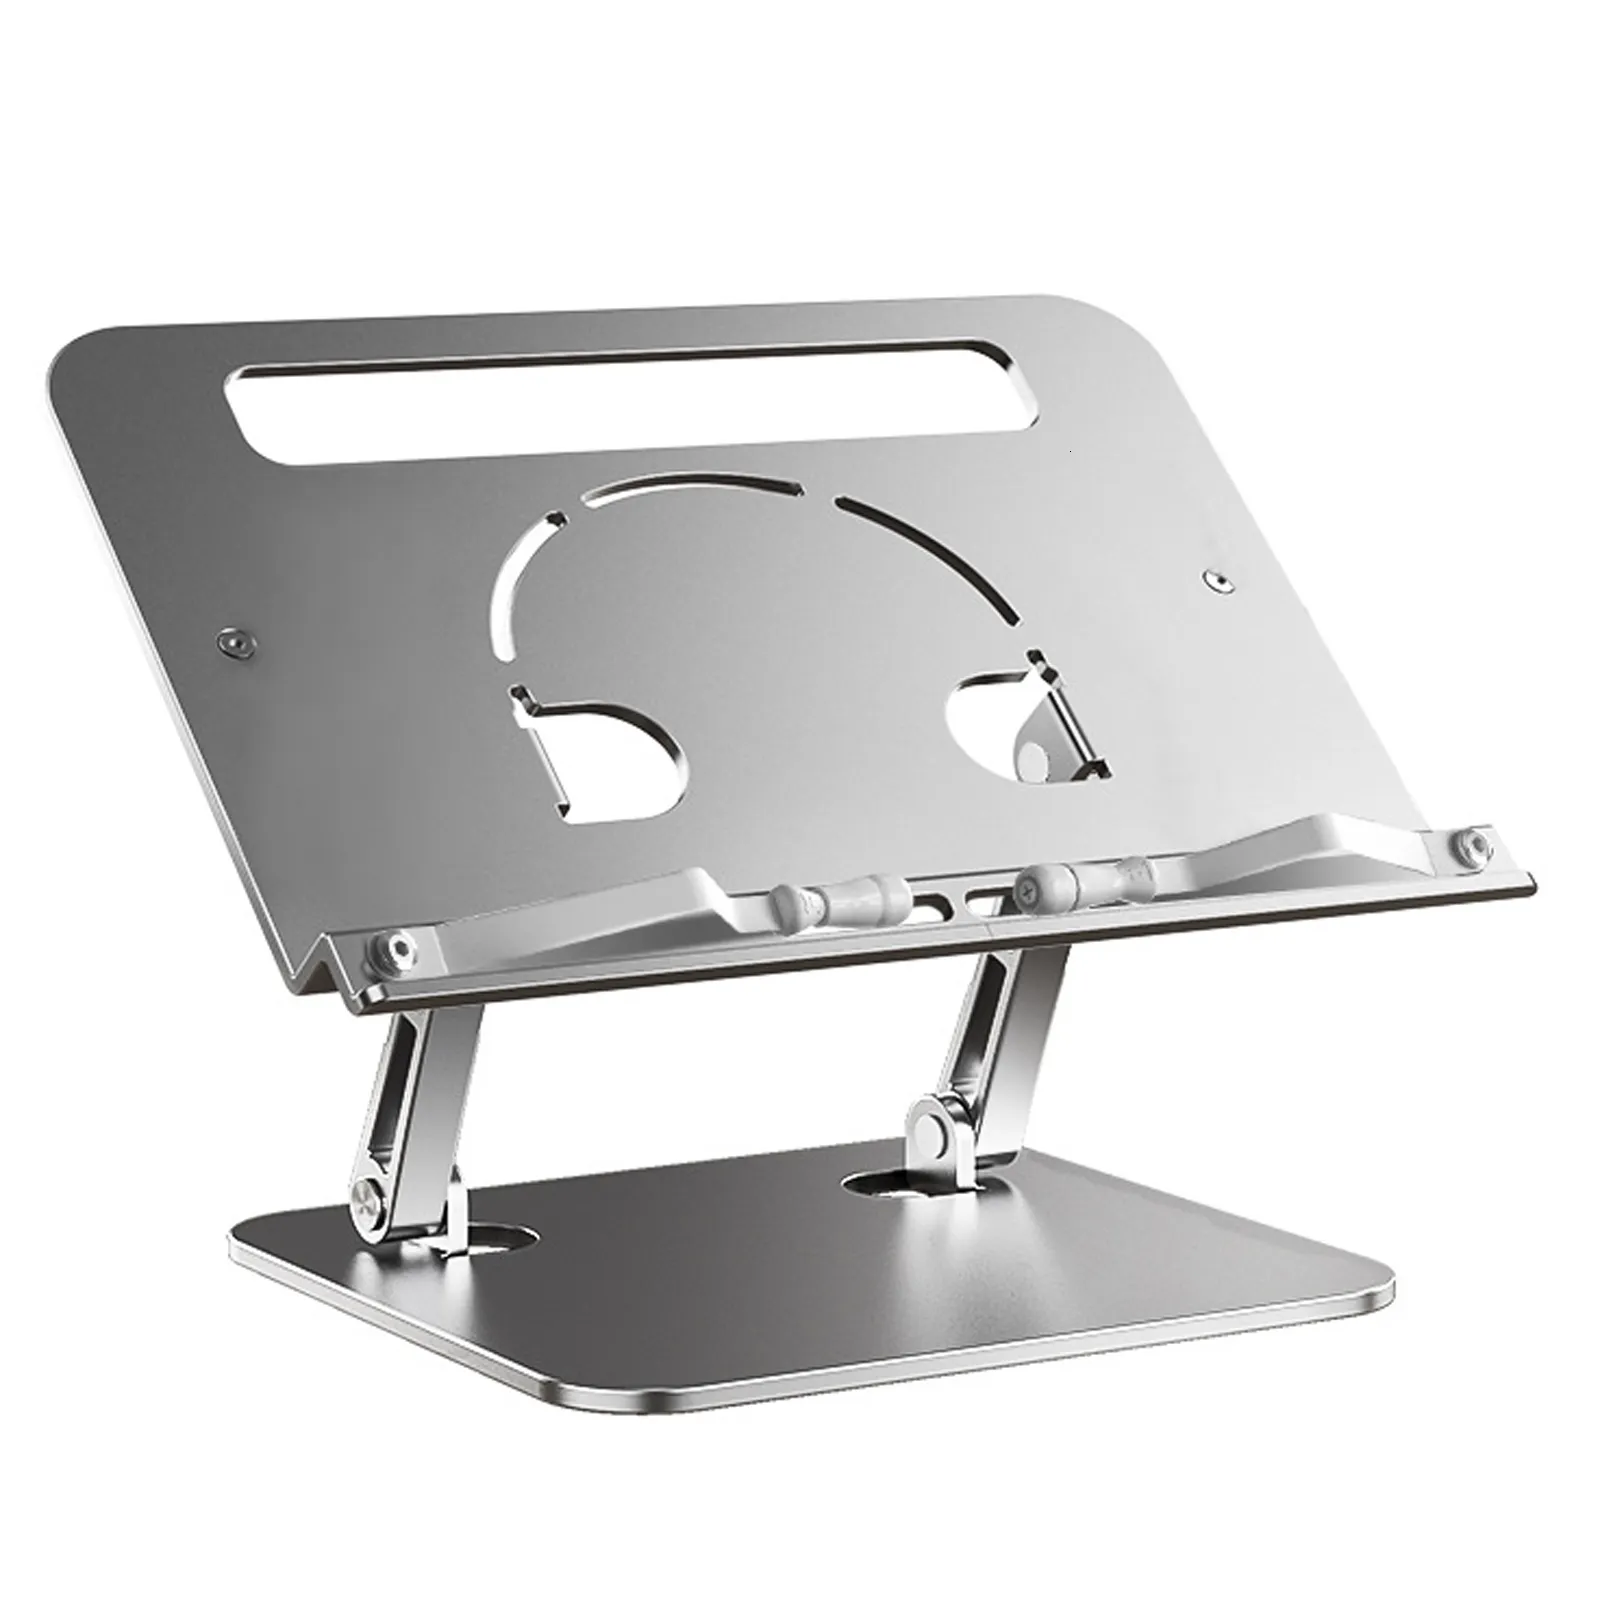 Soporte ajustable de aluminio para lectura de libros, soporte de lectura de  escritorio para portátil y tableta, múltiples alturas/ángulos